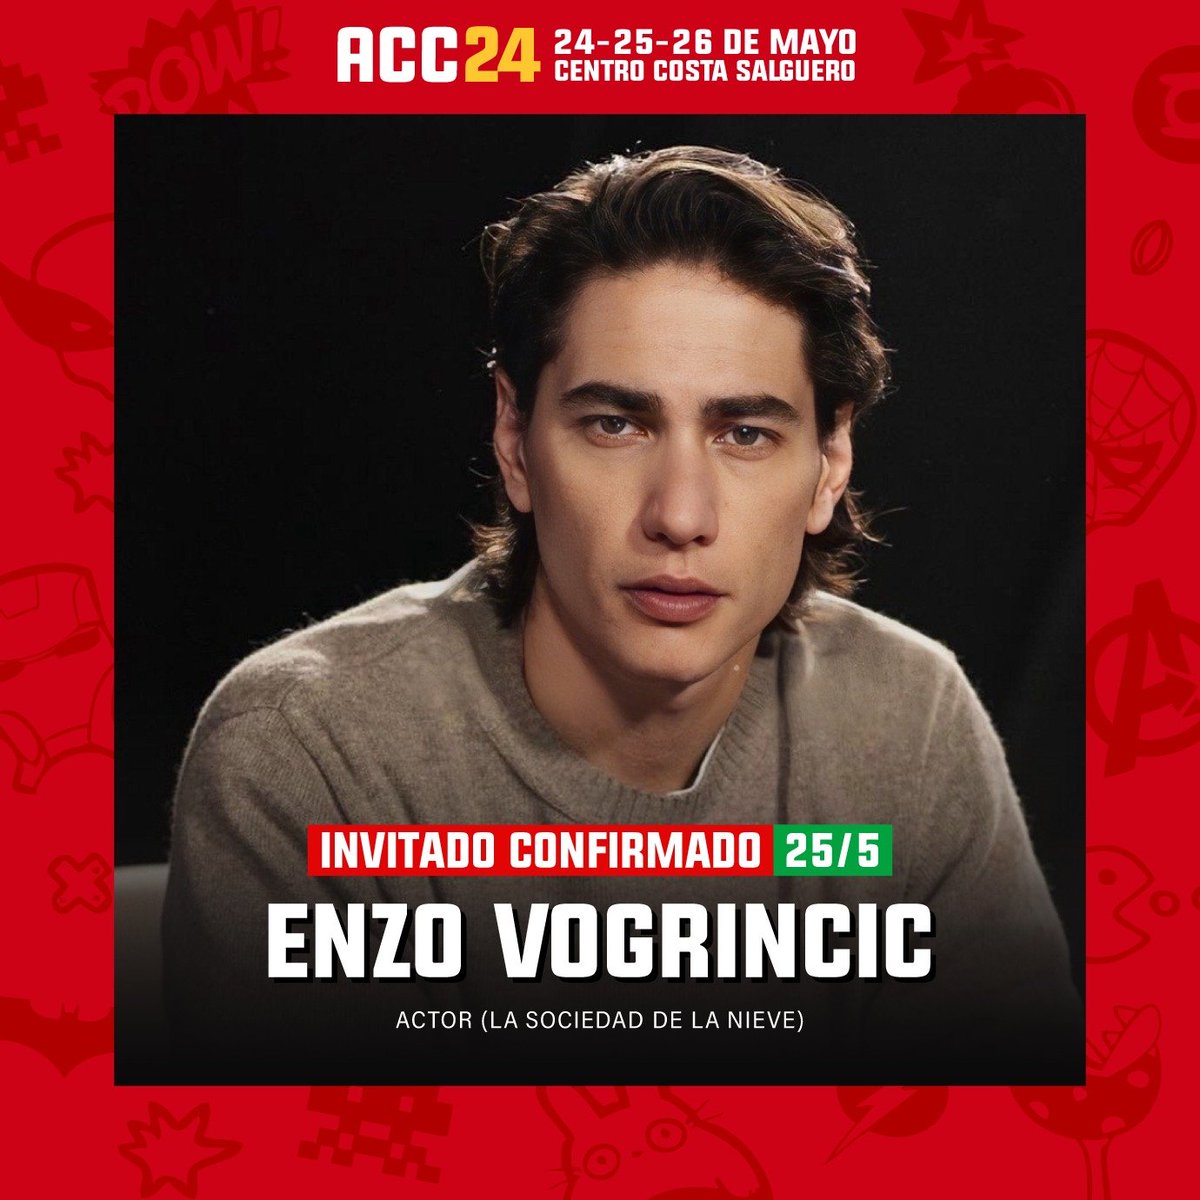 🌟 ¡Otra gran noticia para los fans del cine! 🎬 Nos emociona anunciar que el actor uruguayo, Enzo Vogrincic, protagonista de la multipremiada película 'La Sociedad de la Nieve', #ComicConArgentina #ArgComicCon #ArgentinaComicCon #EnzoVogrincic #LaSociedadDeLaNieve #Cine